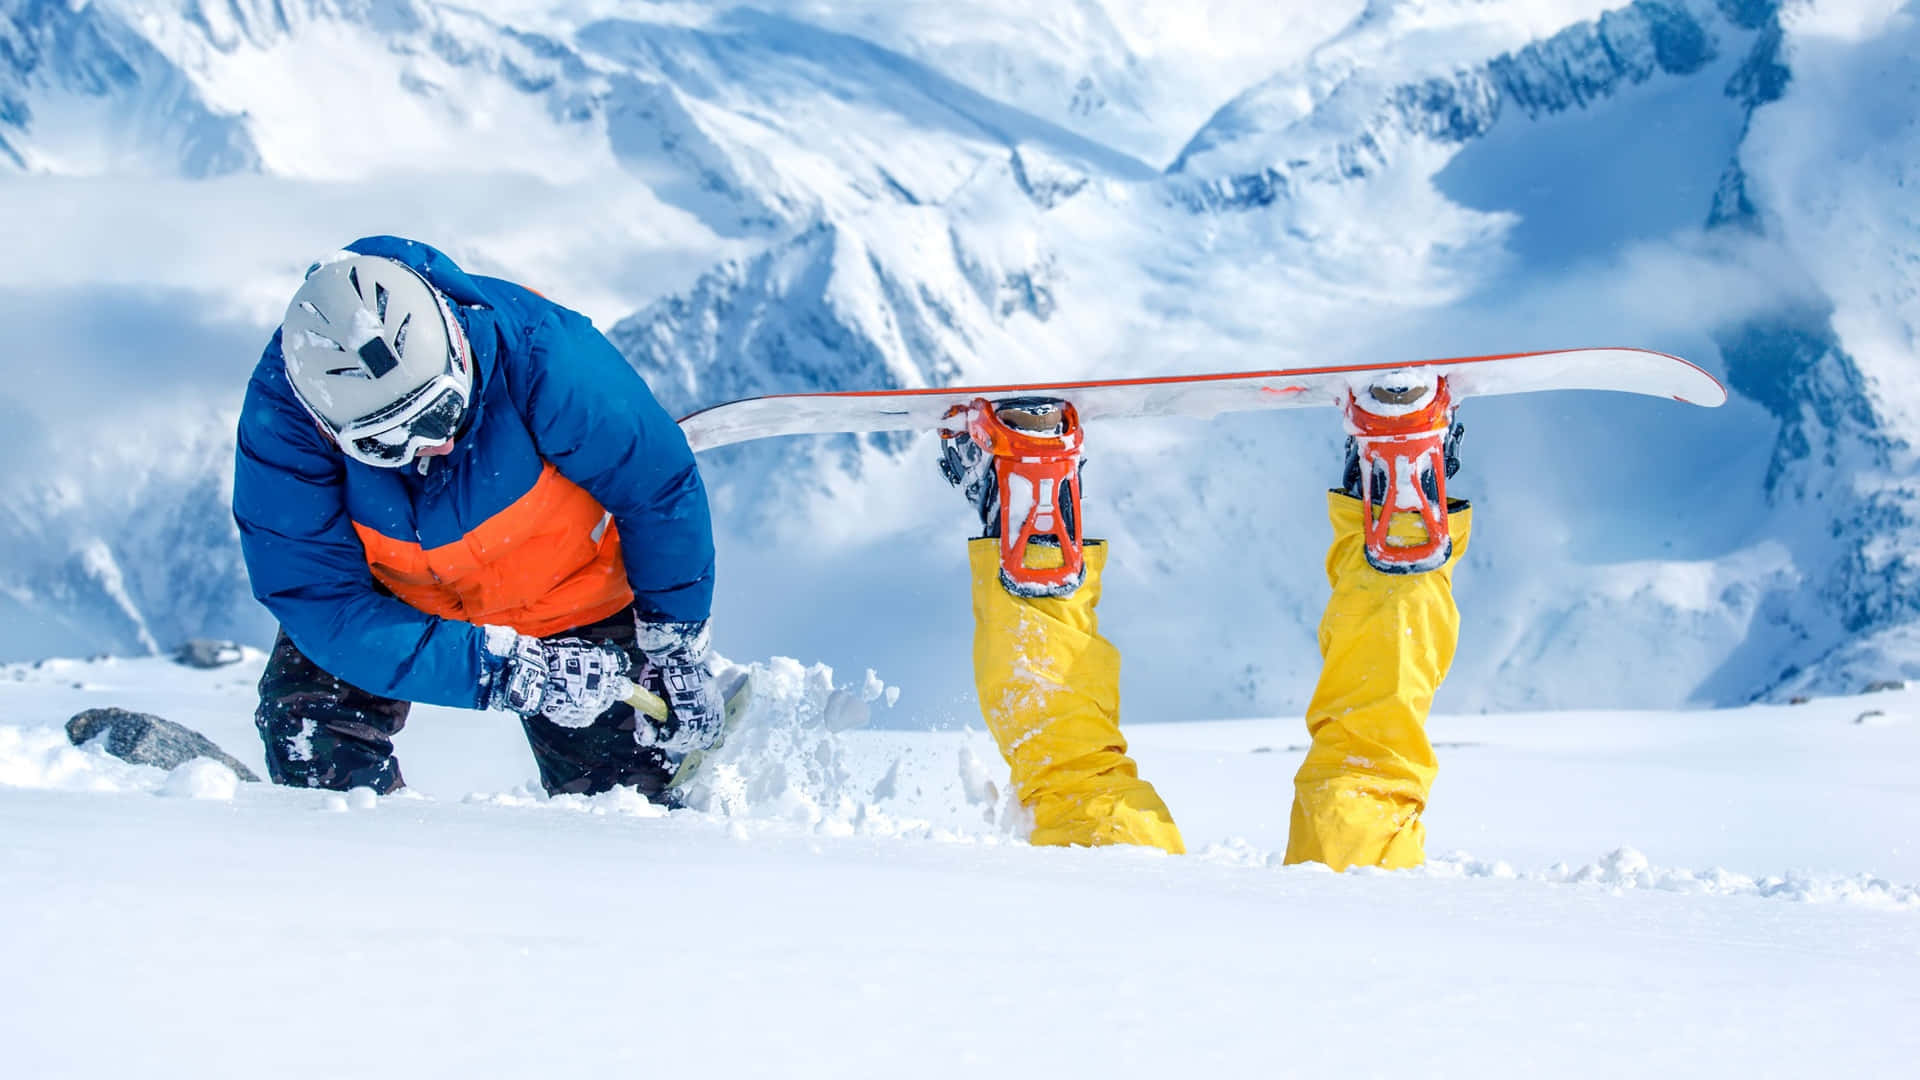 Divertentefoto Di Snowboard Con I Piedi Che Spuntano Fuori Dalla Neve.